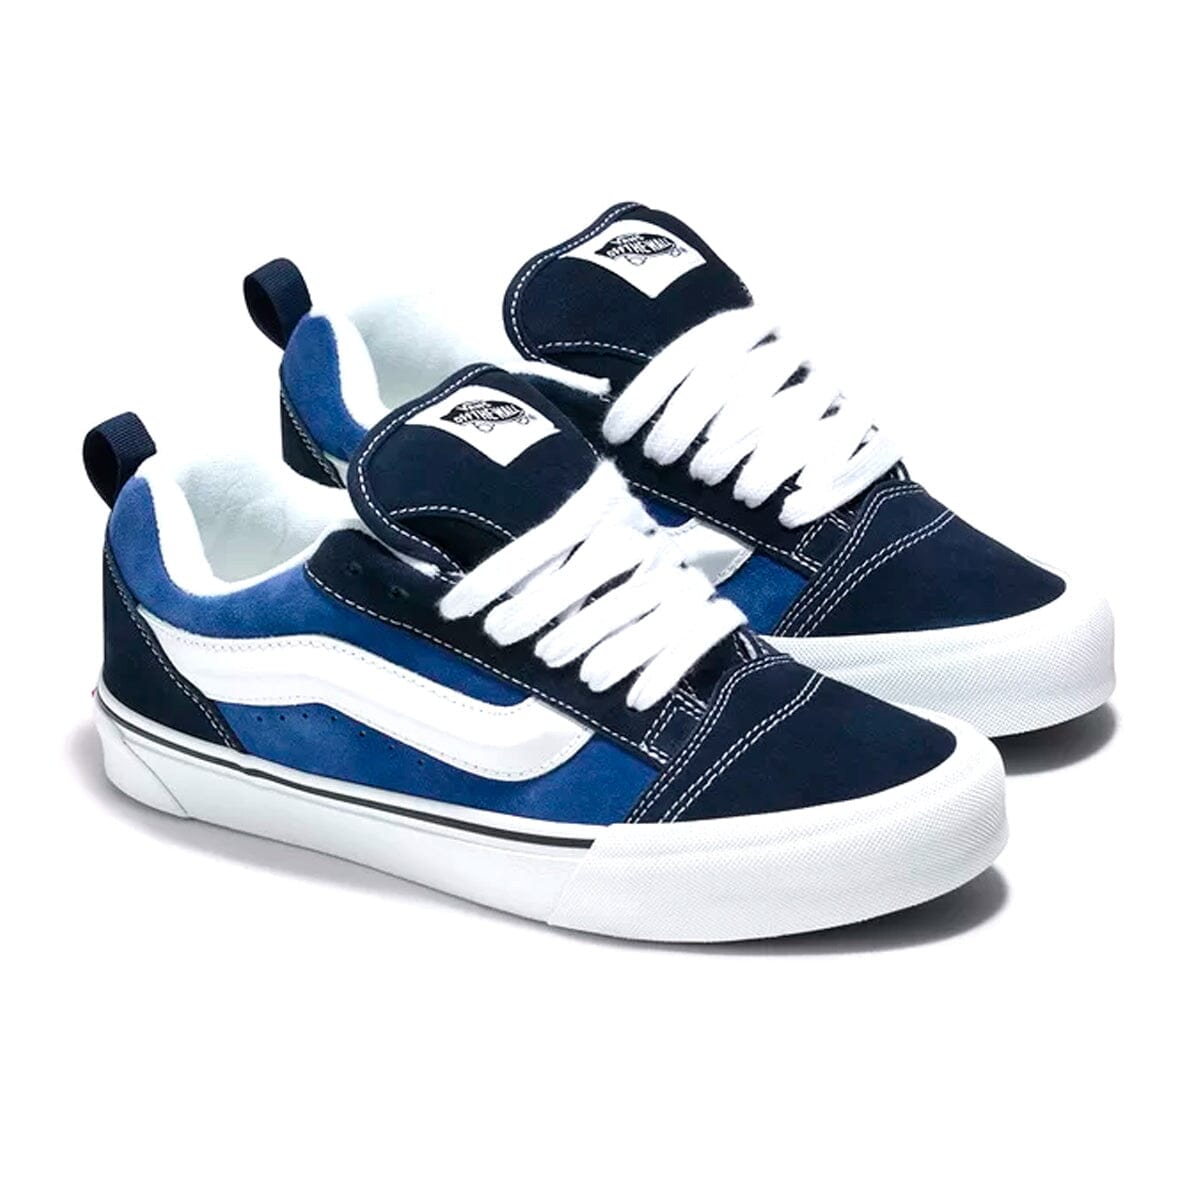 Vans Knu Skool Blue Navy True White Vans Blizz Sneakers 